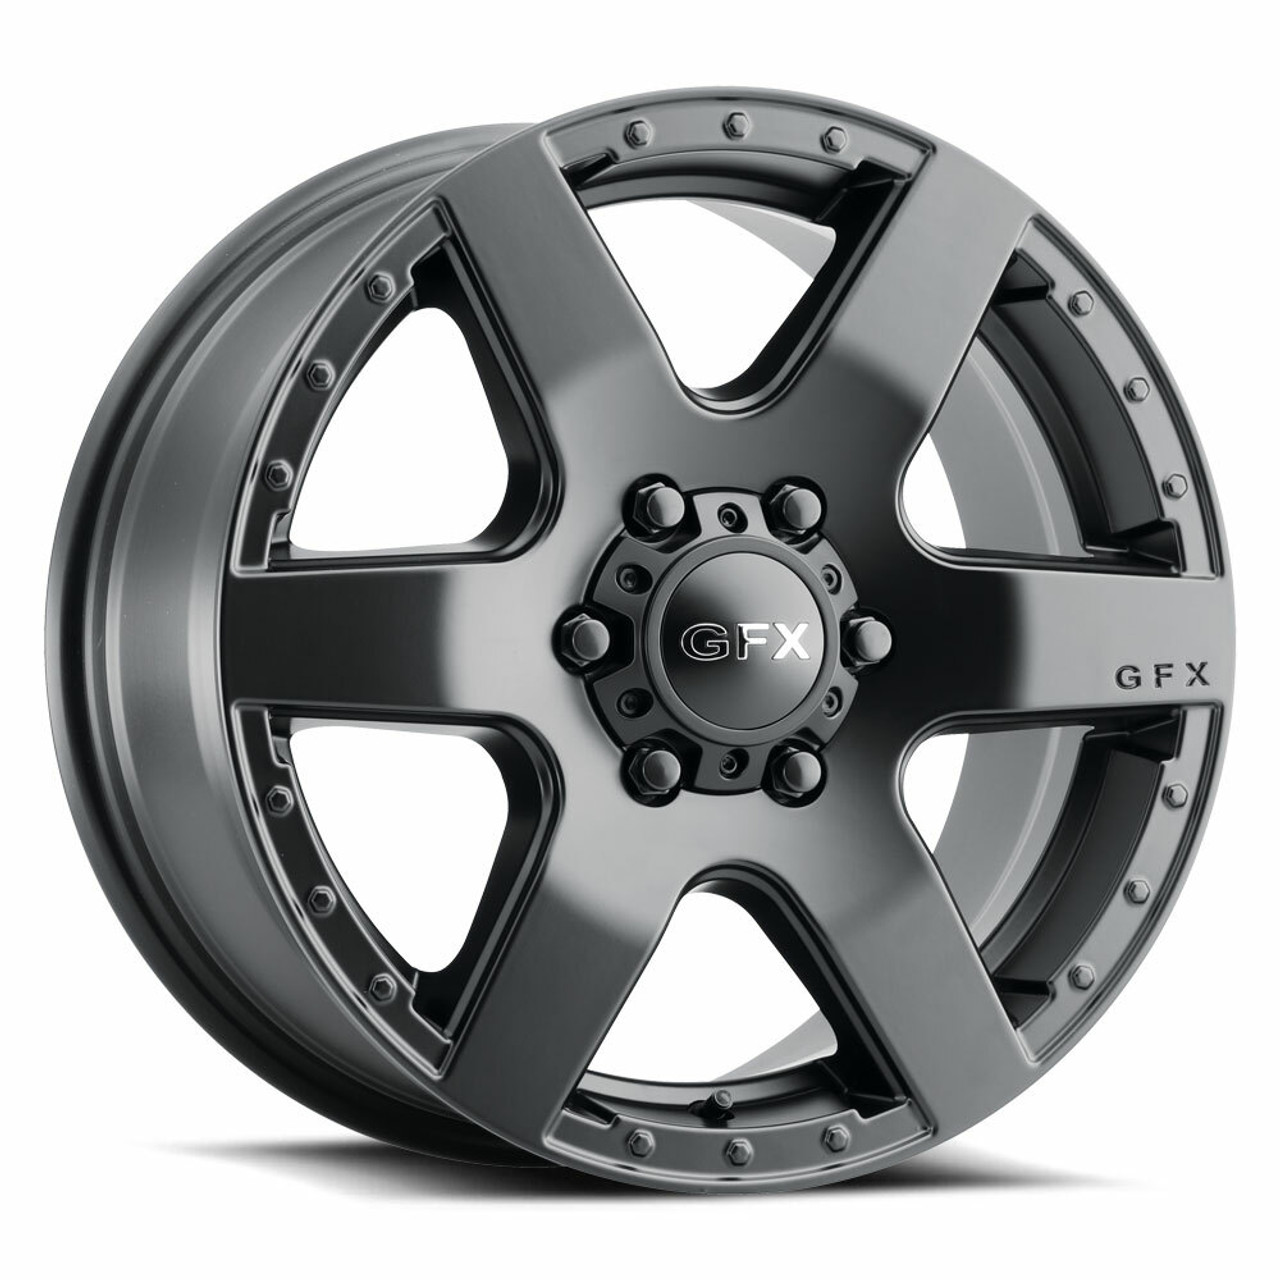 16" Voxx G-FX MV1 Matte Black Wheel 16x6.5 6x130 30mm Rim